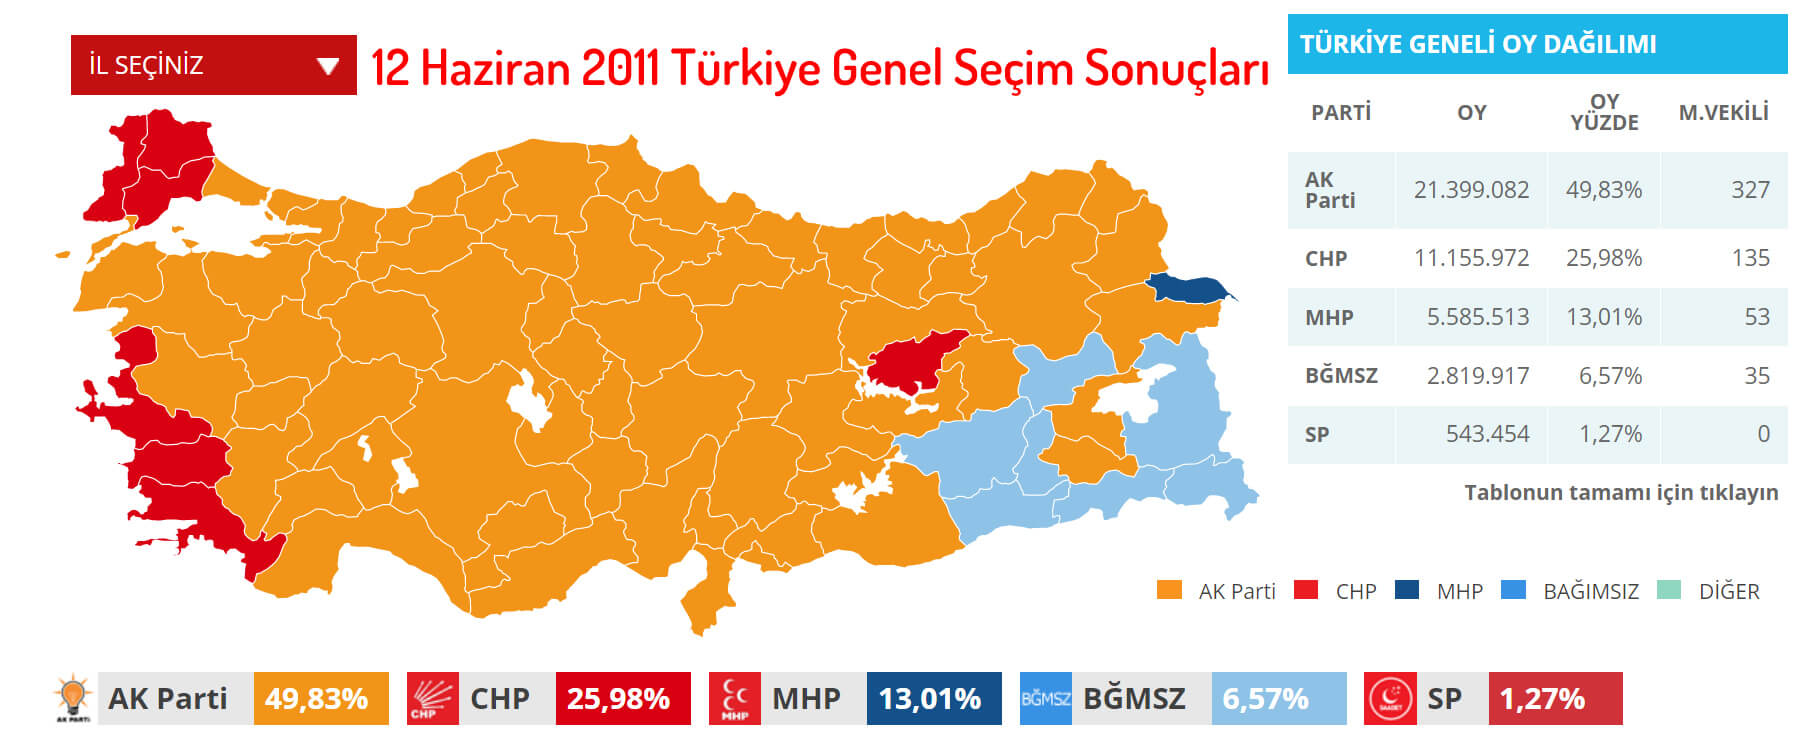 12 Haziran 2011 Türkiye Genel Seçim Sonuçları